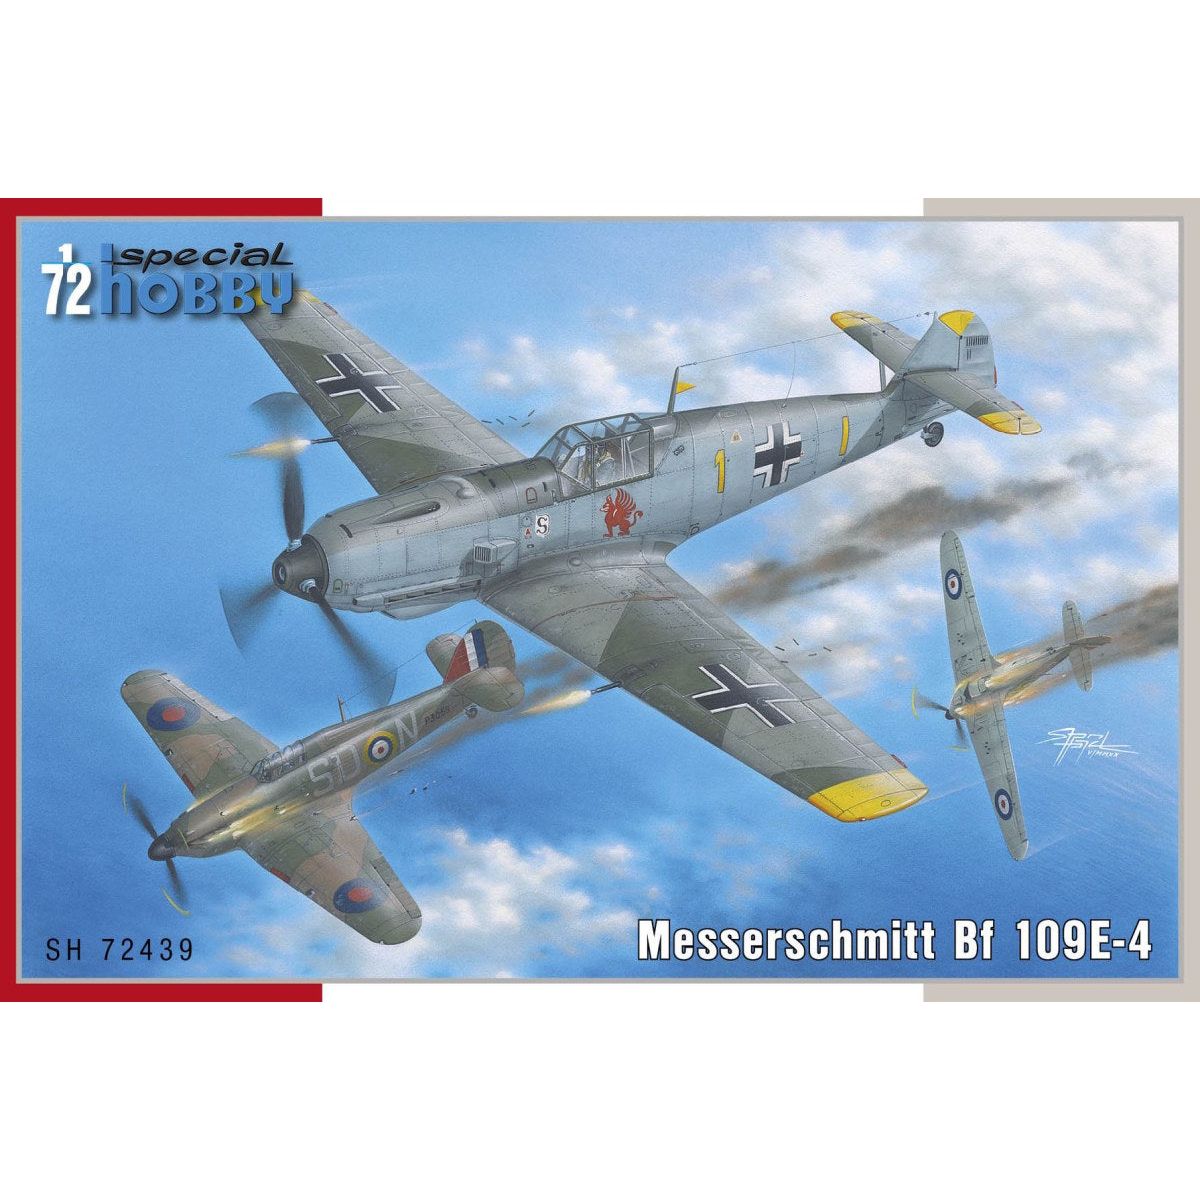 SPECIAL HOBBY 1/72 Messerschmitt Bf 109E-4